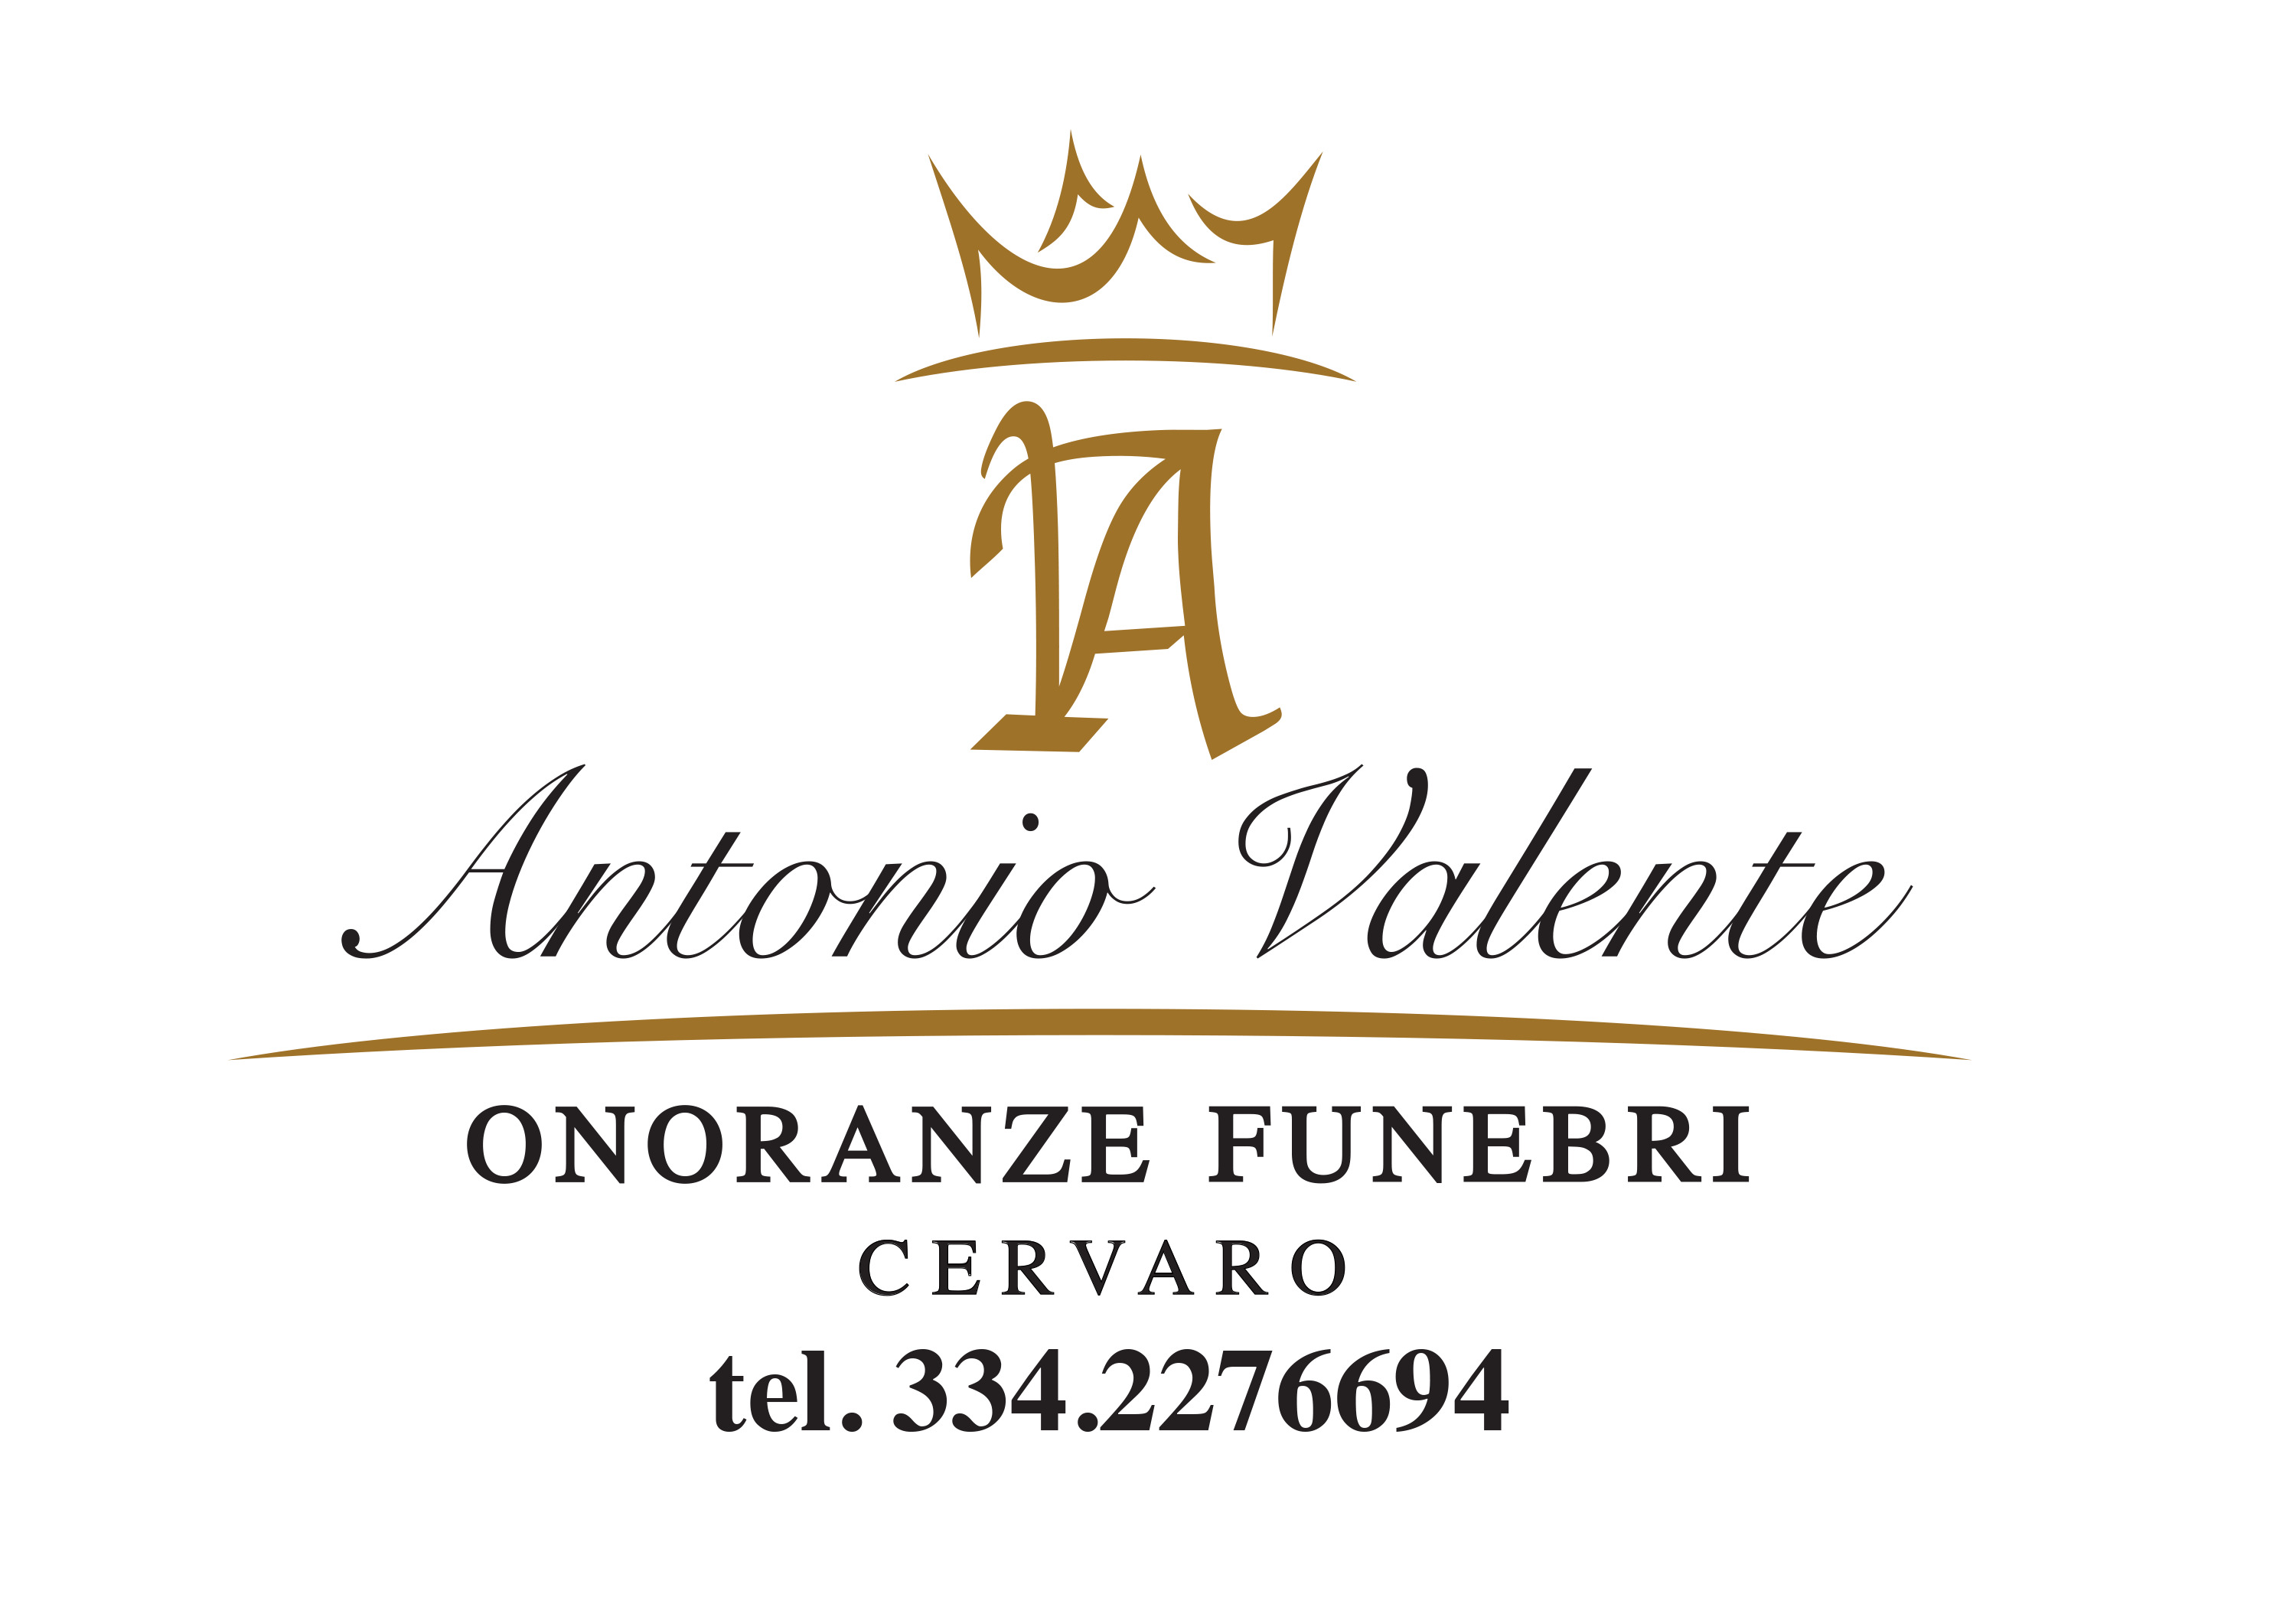 Onoranze Funebri Valente Antonio cervaro